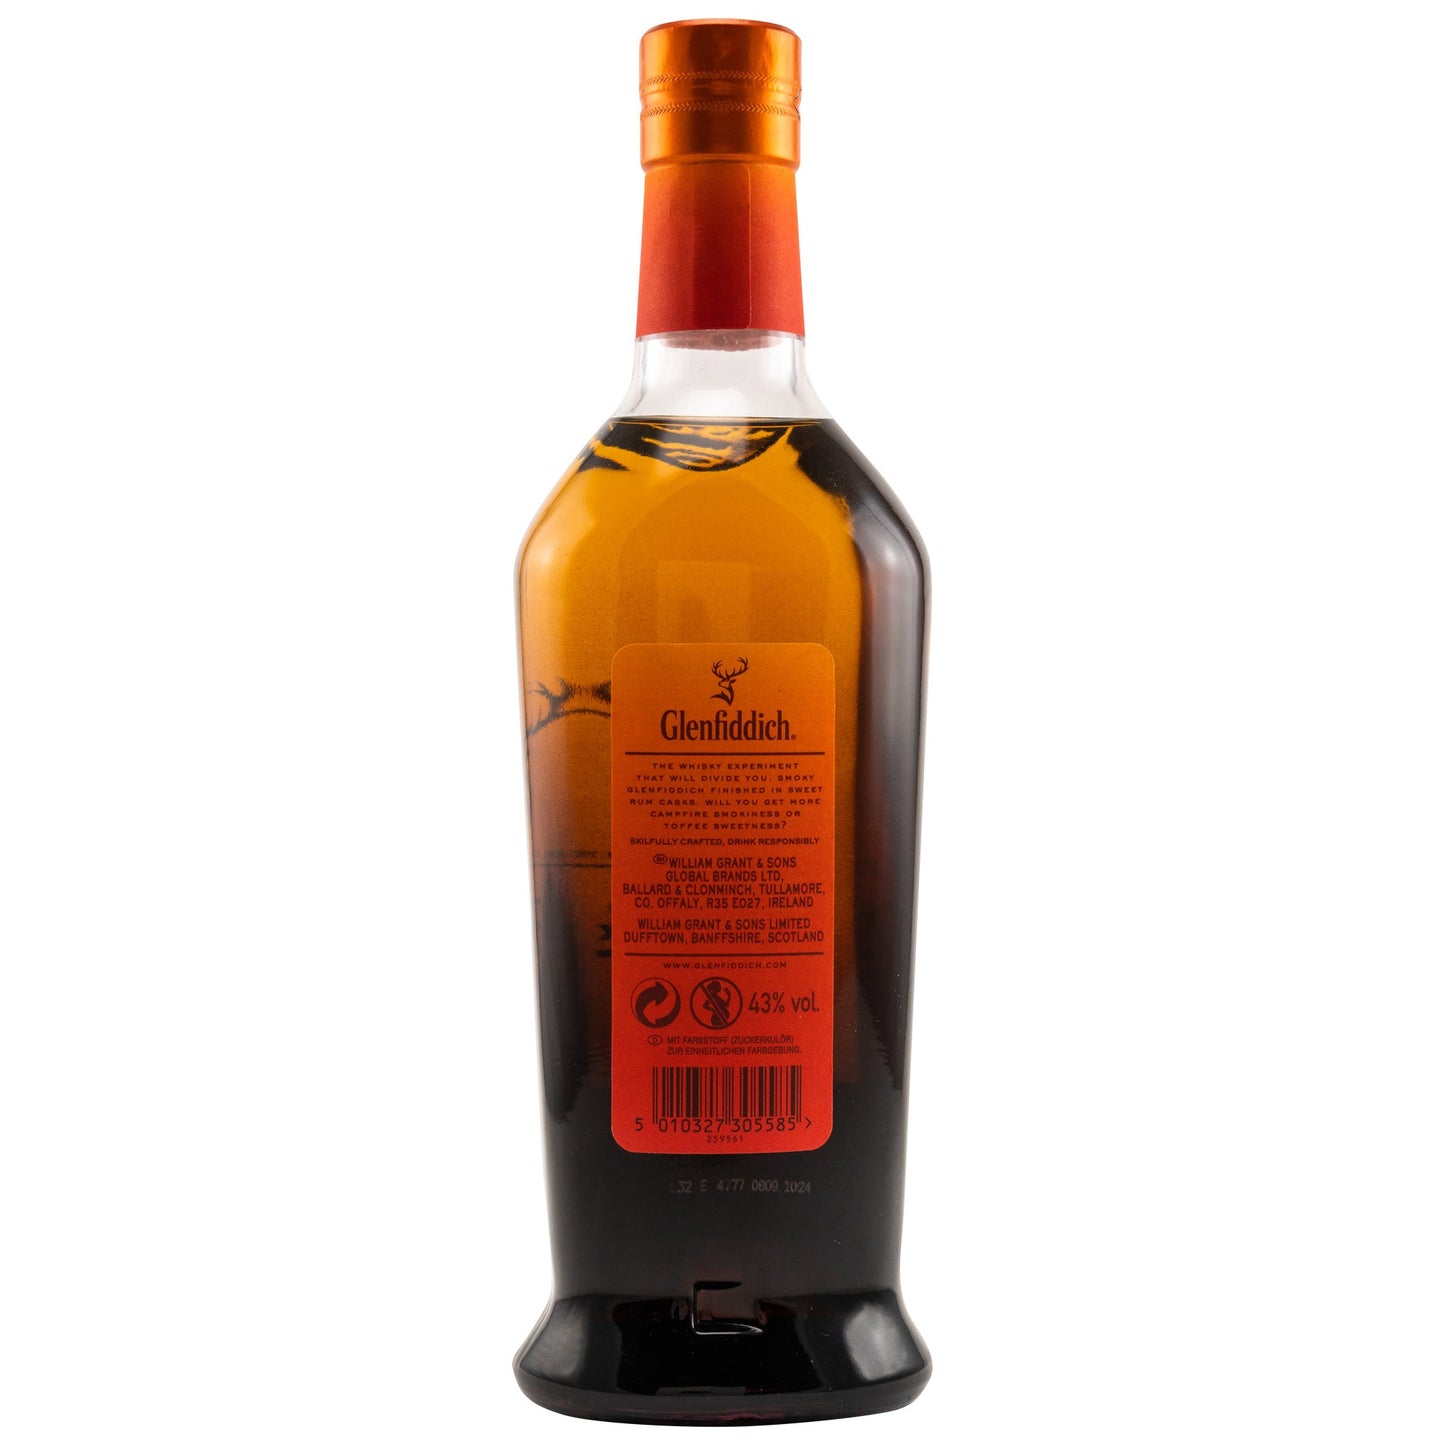 Glenfiddich | Fire & Cane | Rum Finish | 0,7l | 43%GET A BOTTLE